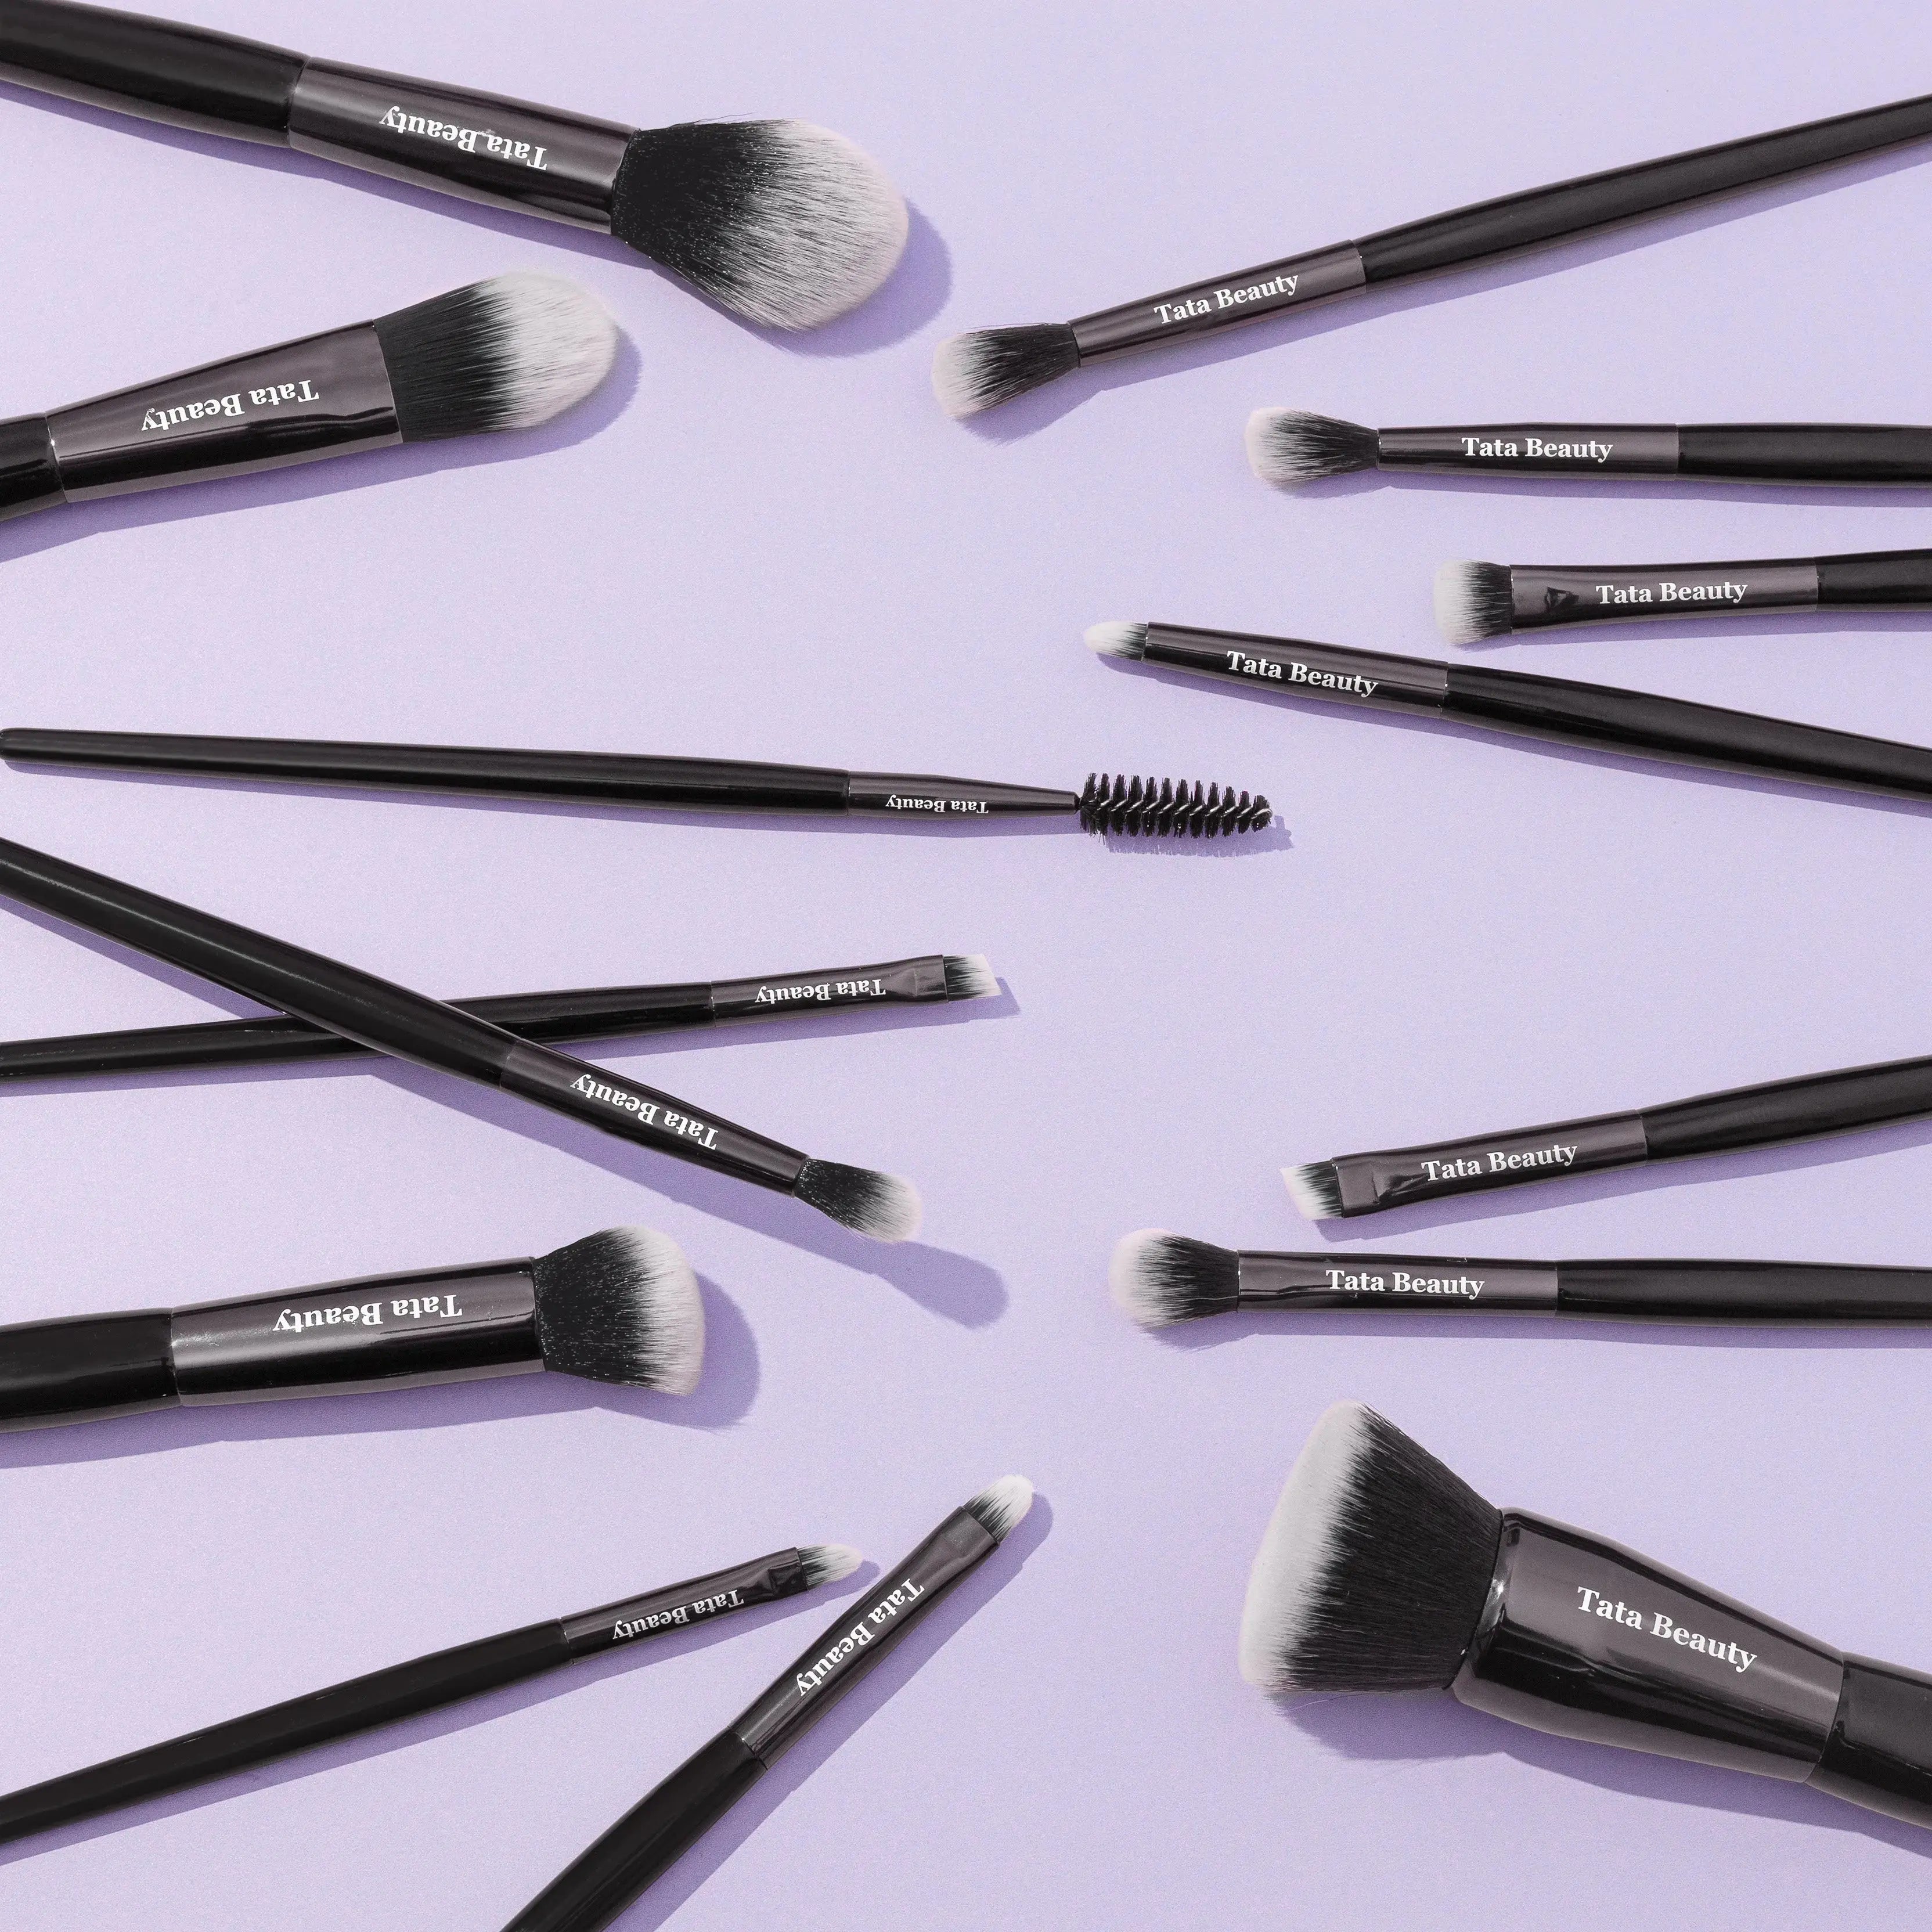 Makeup brushes, Brush set, eye and face brushes. Tata Beauty